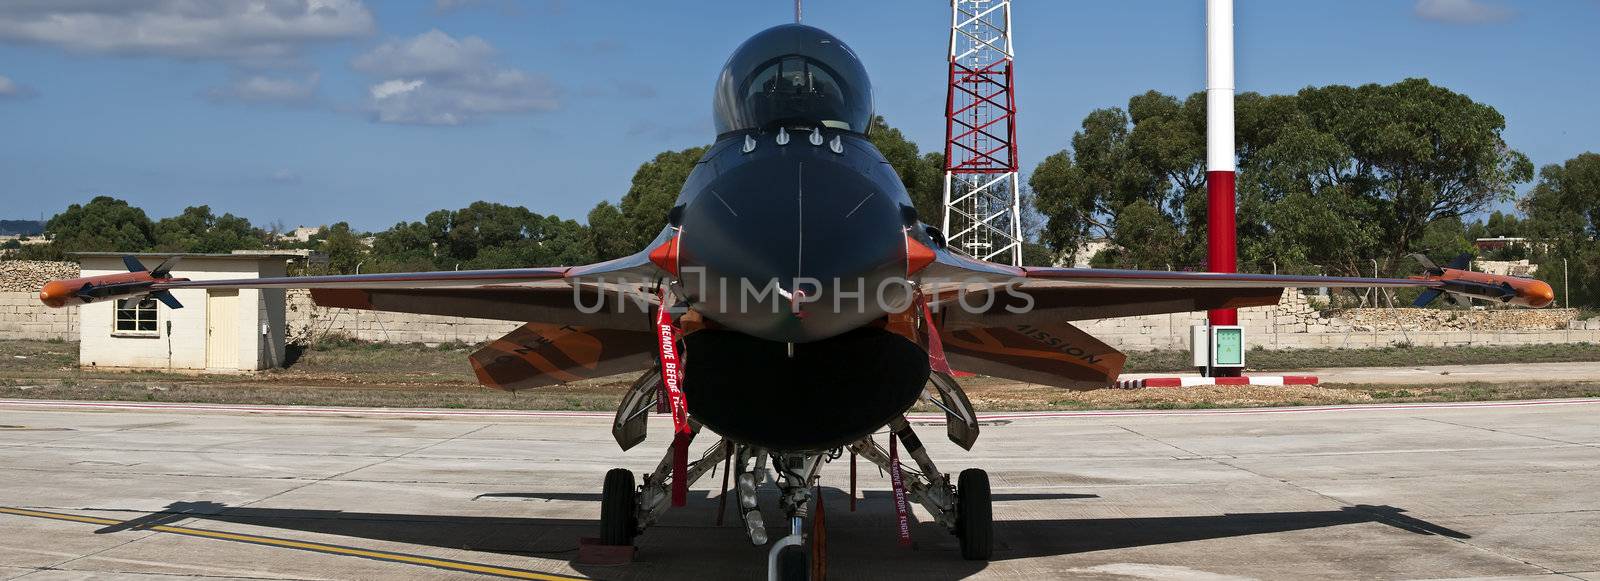 RNLAF Demoteam F-16 by PhotoWorks